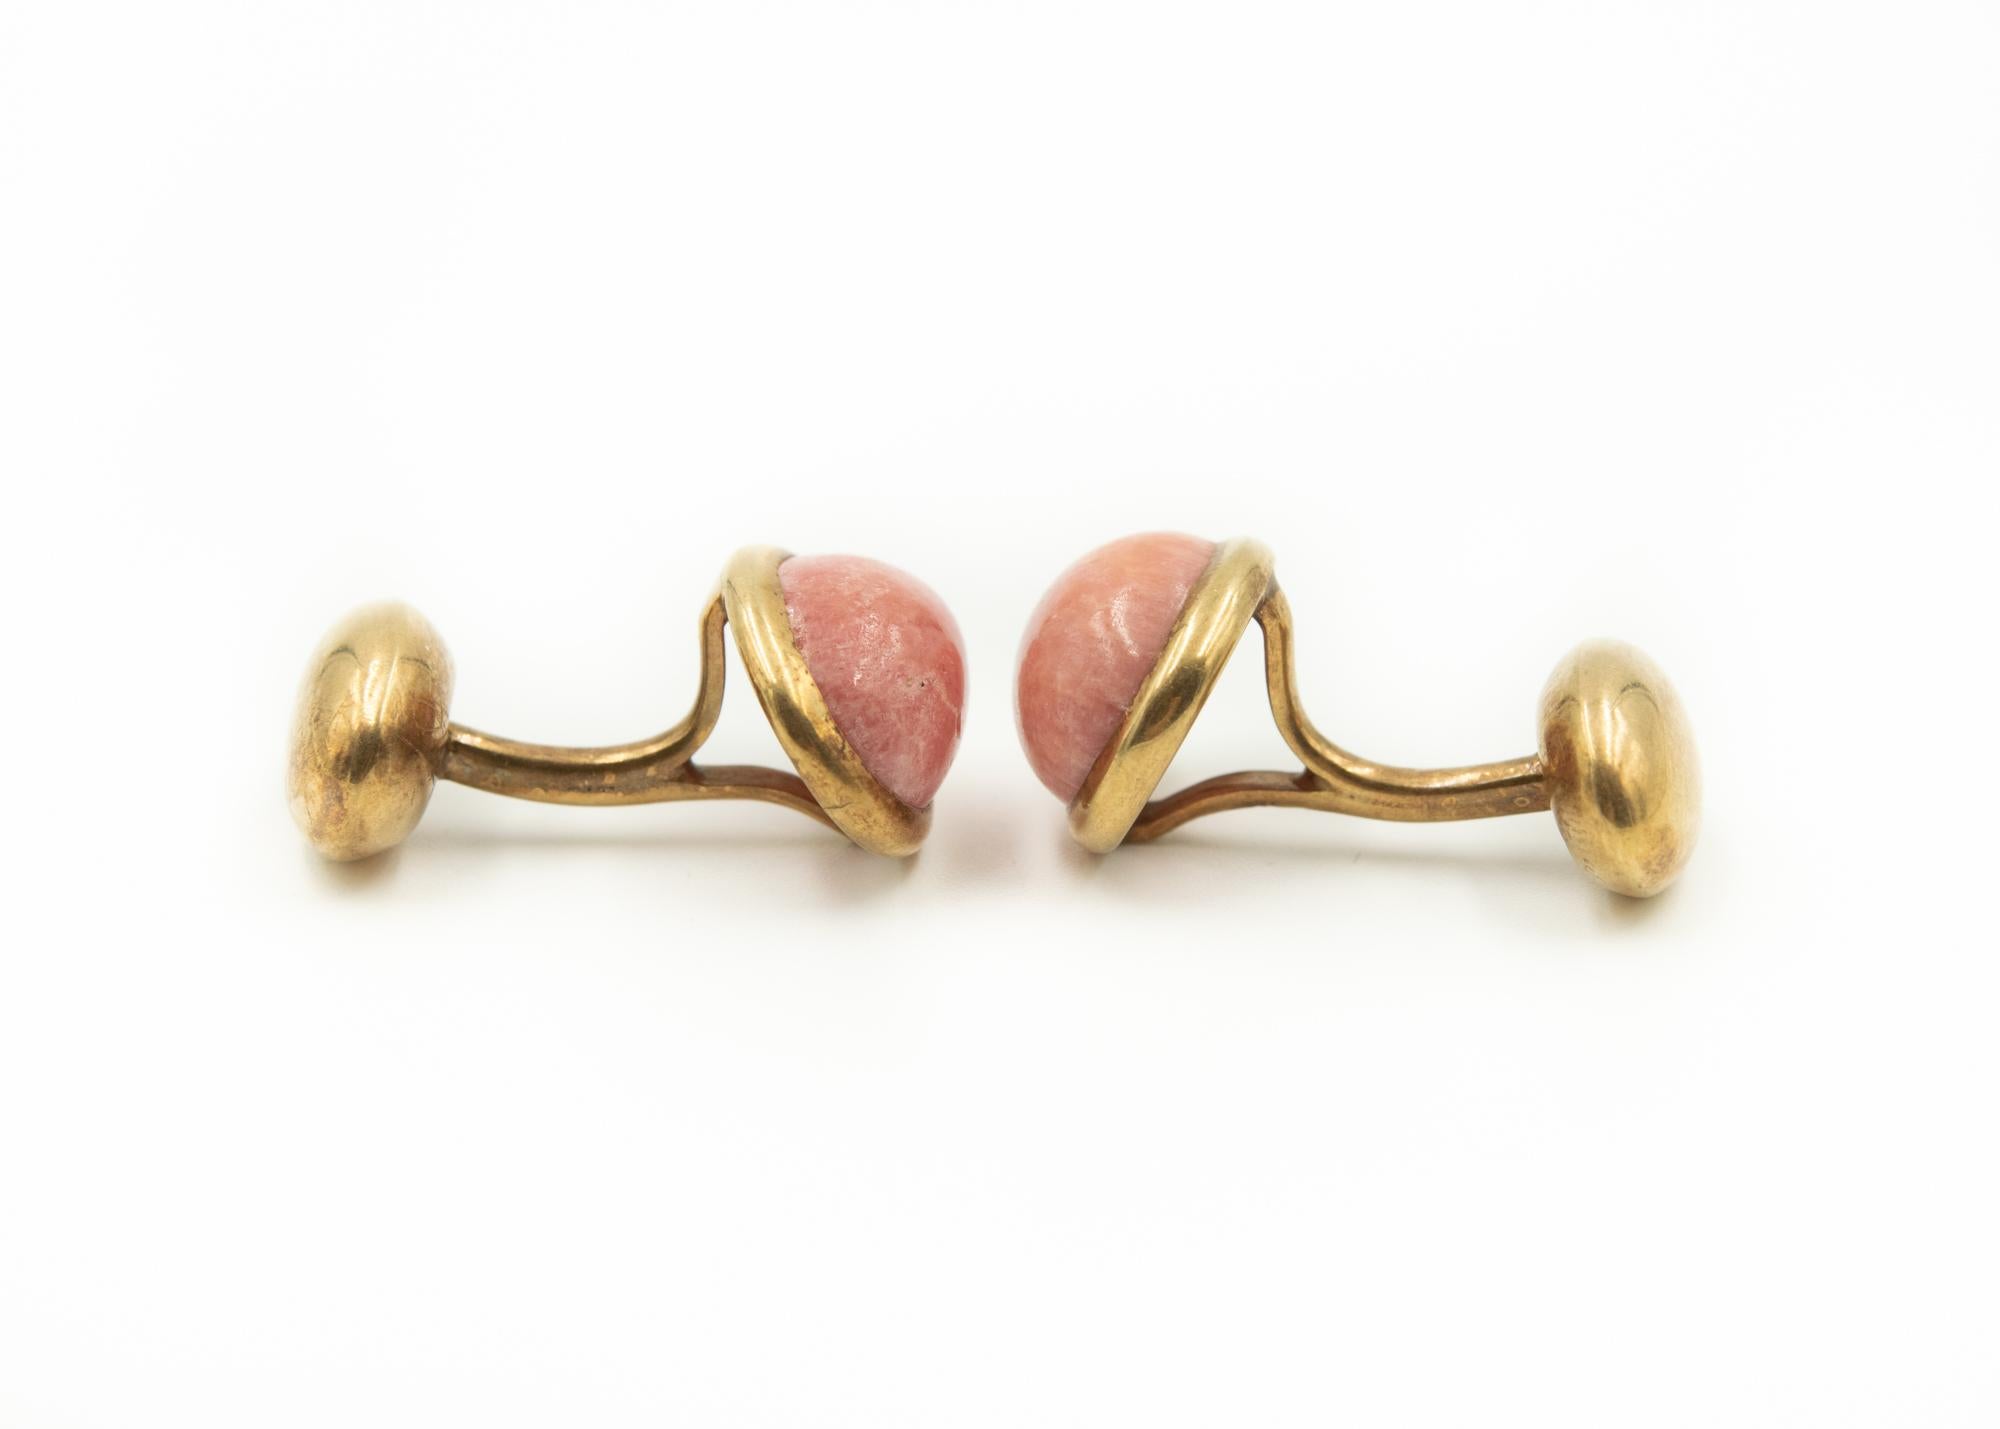 Boutons de manchette anciens présentant des cabochons ovales de rhodochrosite rose (mesurant environ 12 mm x 8,5 mm) sertis dans une lunette ovale en or.  De l'autre côté se trouve une section ovale en or plus petite.  Le dos est fixe et doit être